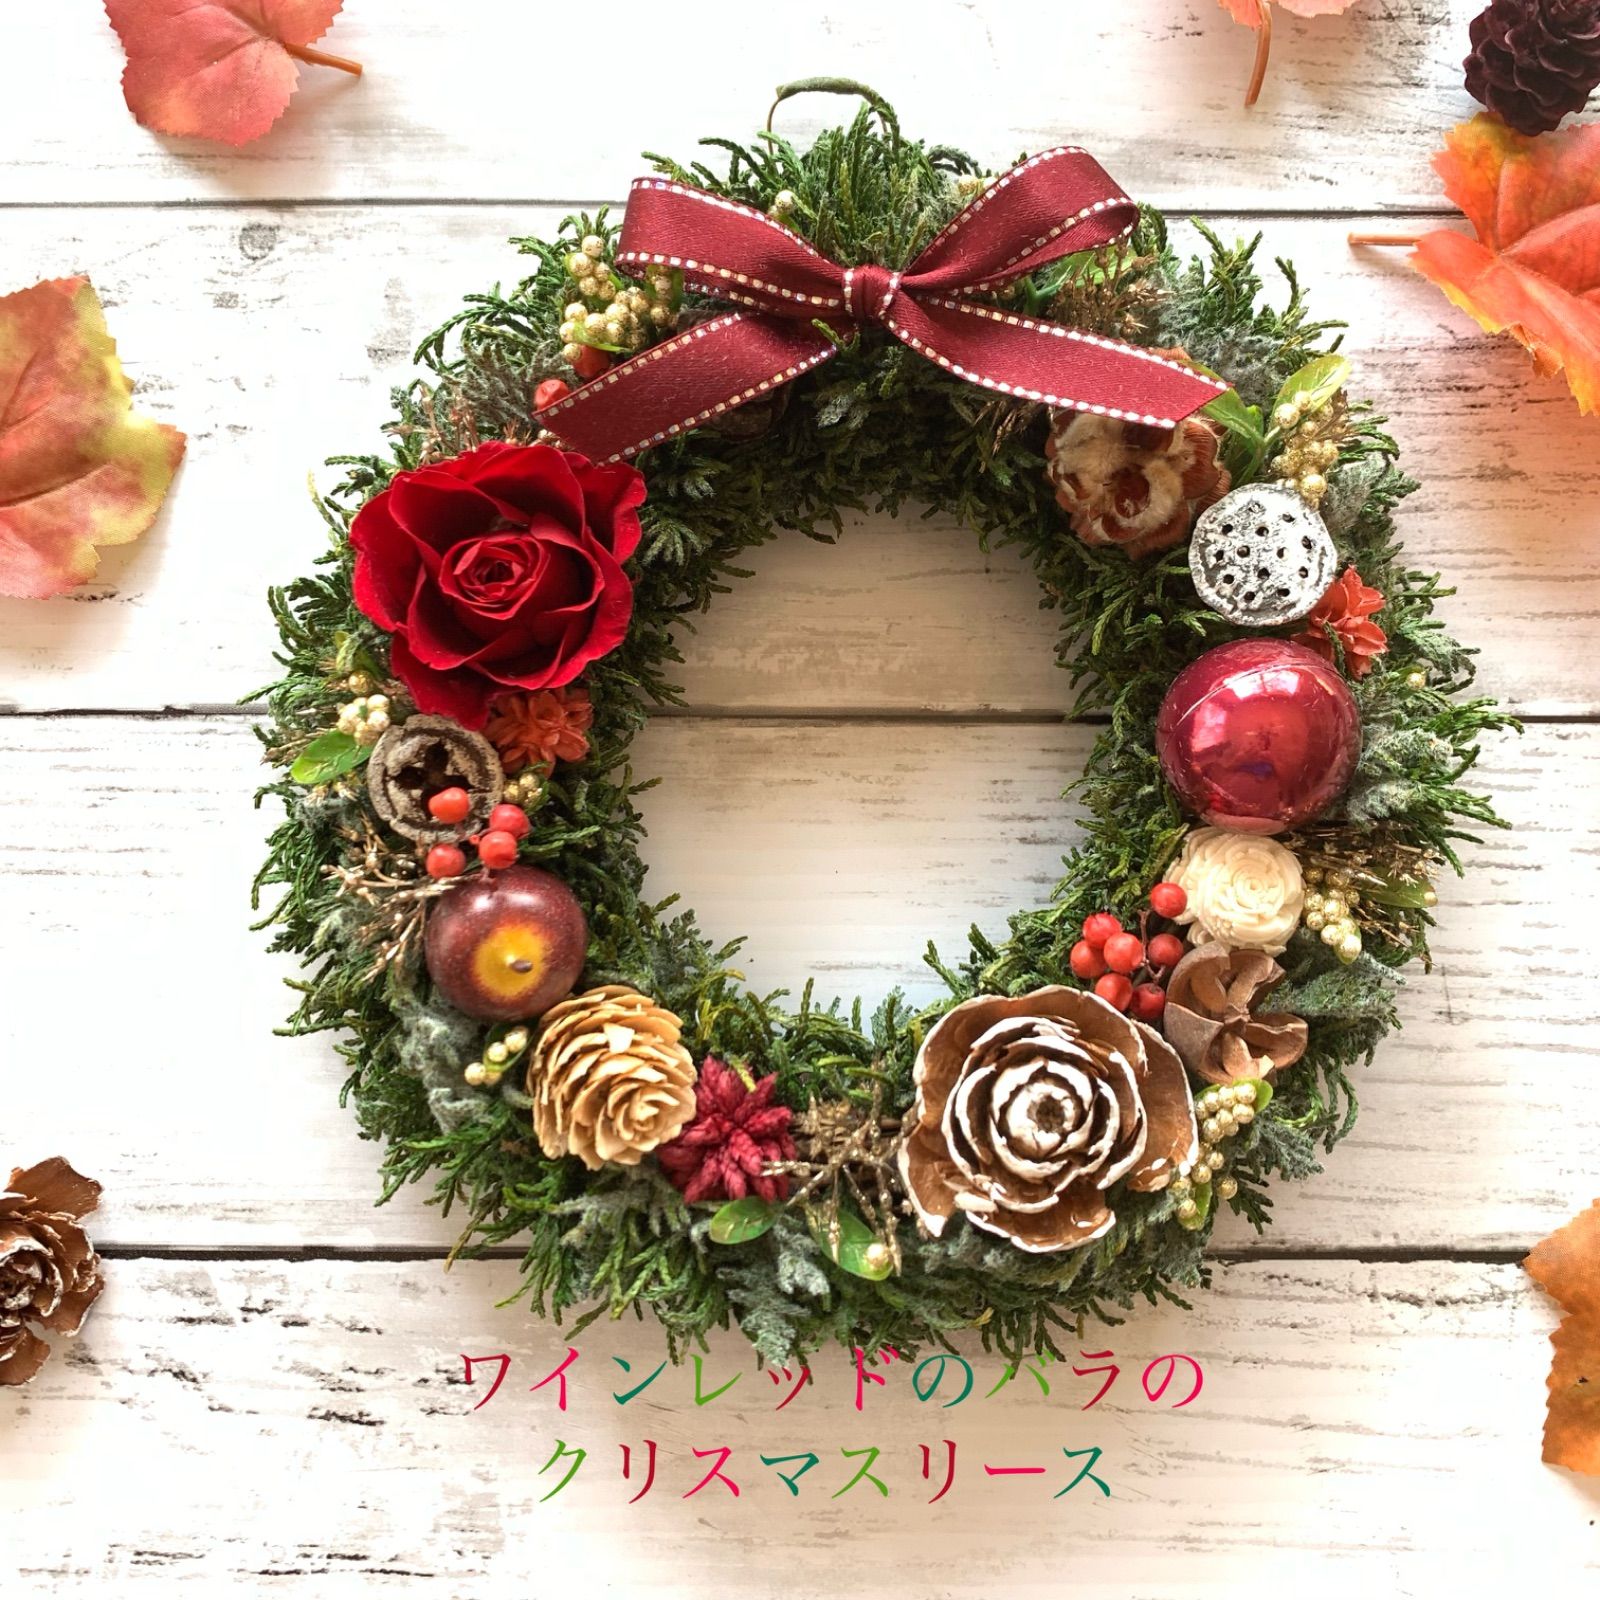 【23cm】クリスマス リース♥️ワインレッド/バラ